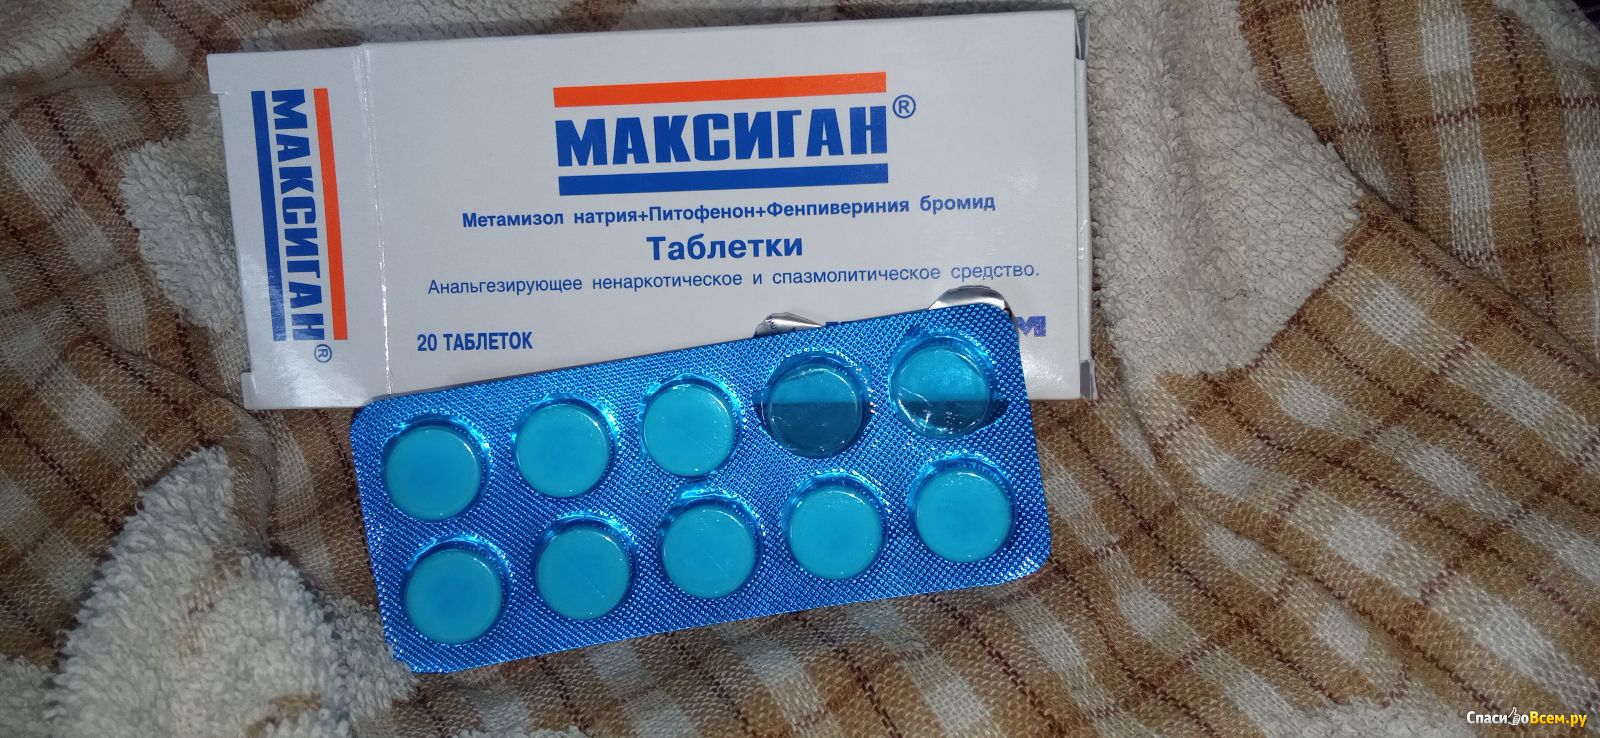 Сильные обезболивающие таблетки после. Обезболивающие таблетки. Максиган таблетки. Обезболивающие таблетки в синей упаковке. Недорогое обезболивающее в таблетках.